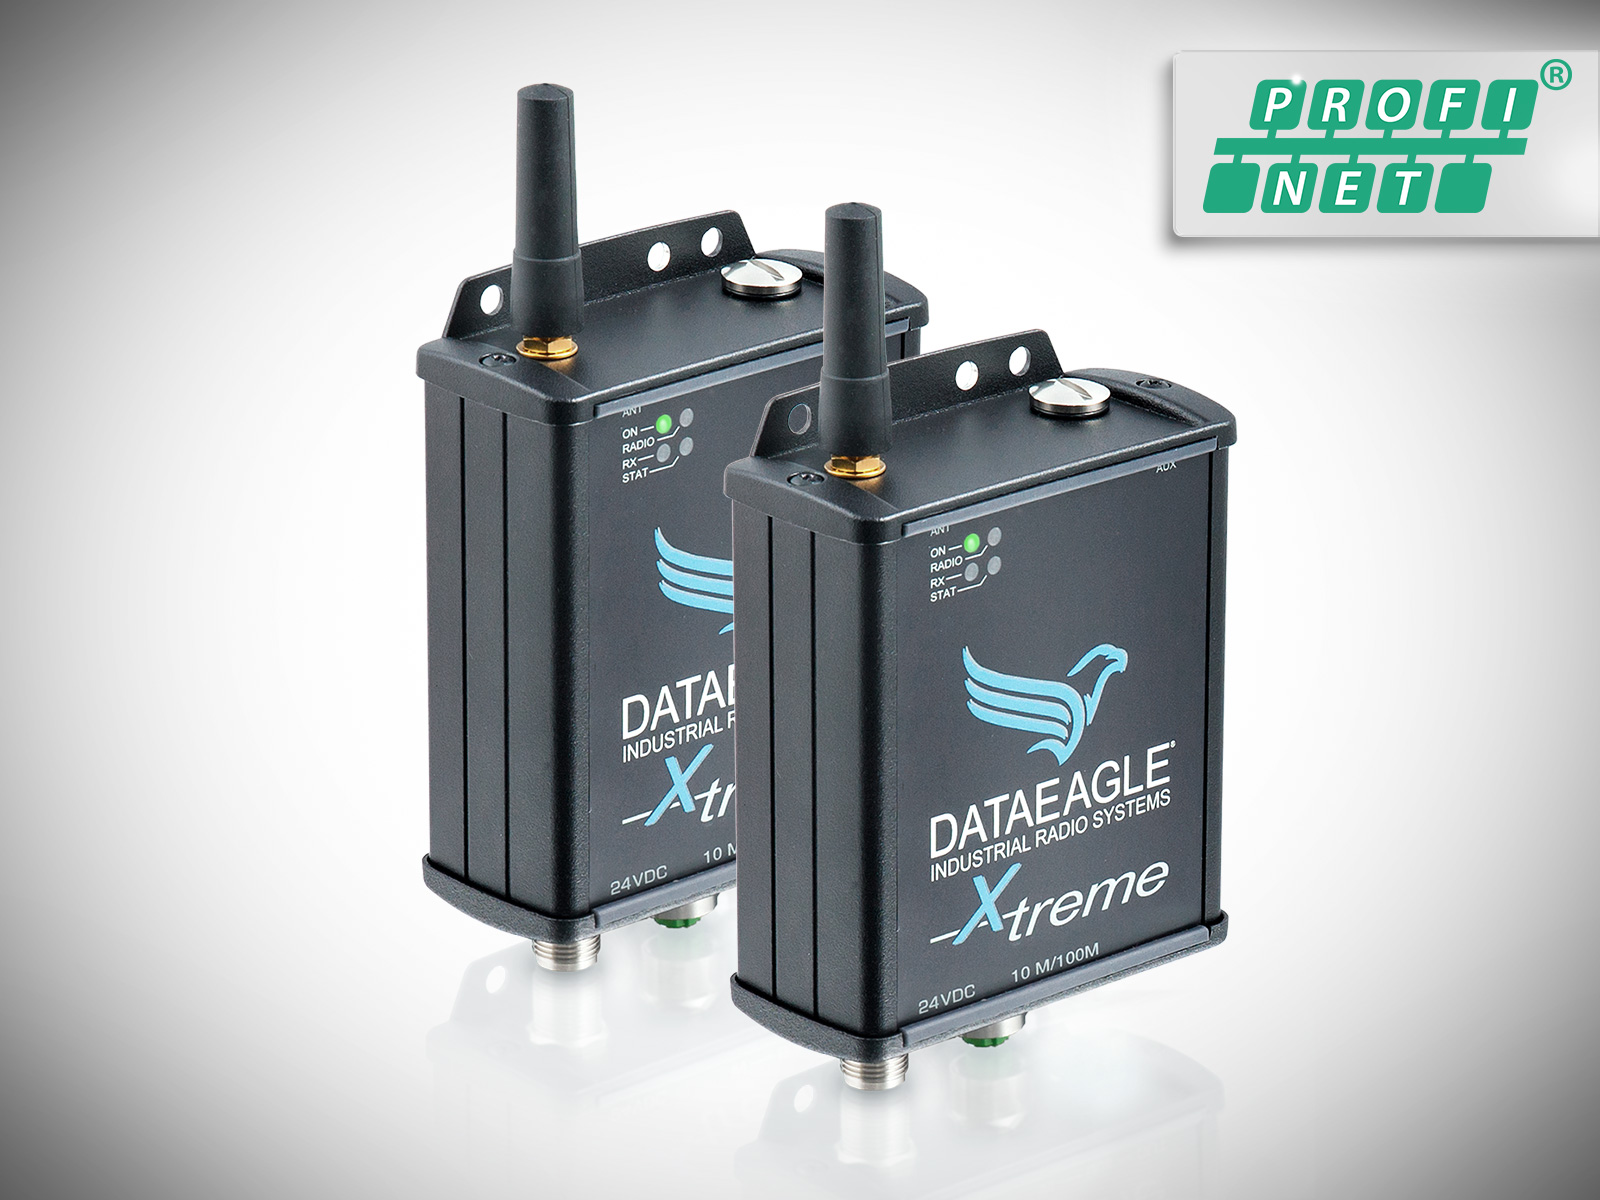 DATAEAGLE 4000 X-treme • Wireless PROFINET • Datenfunkmodem für die kabellose Datenübertragung von PROFINET